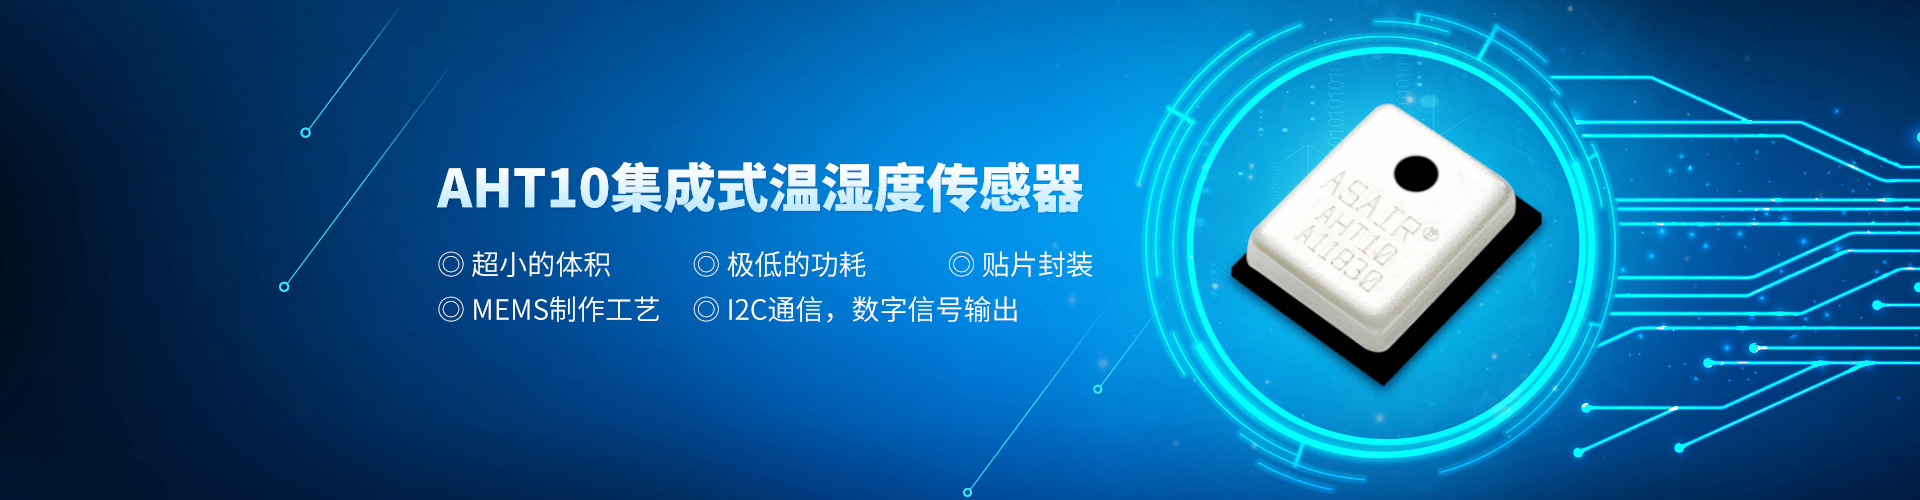 广州奥松电子四大优势提升国产传感器竞争力